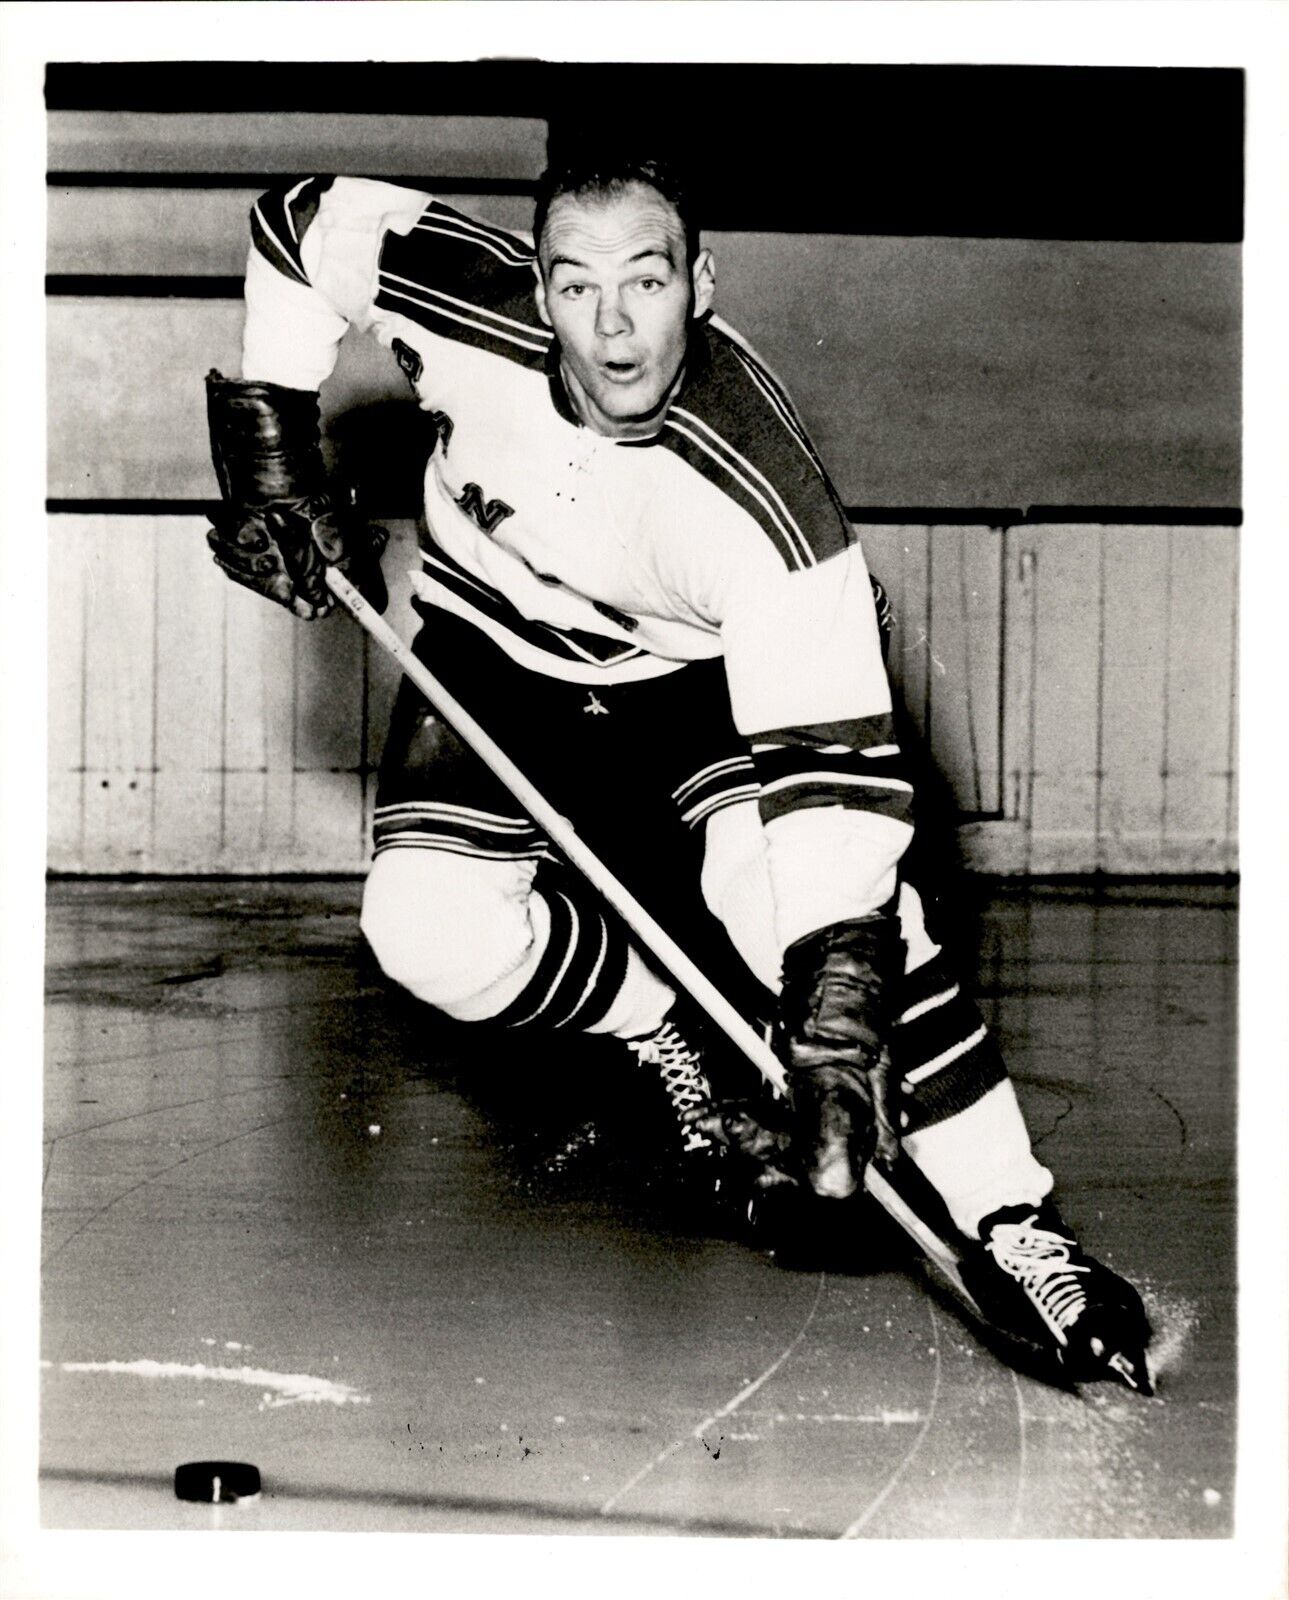 PF19 Original Photo IVAN IRWIN 1953-58 NEW YORK RANGERS NHL ICE HOCKEY DEFENSE